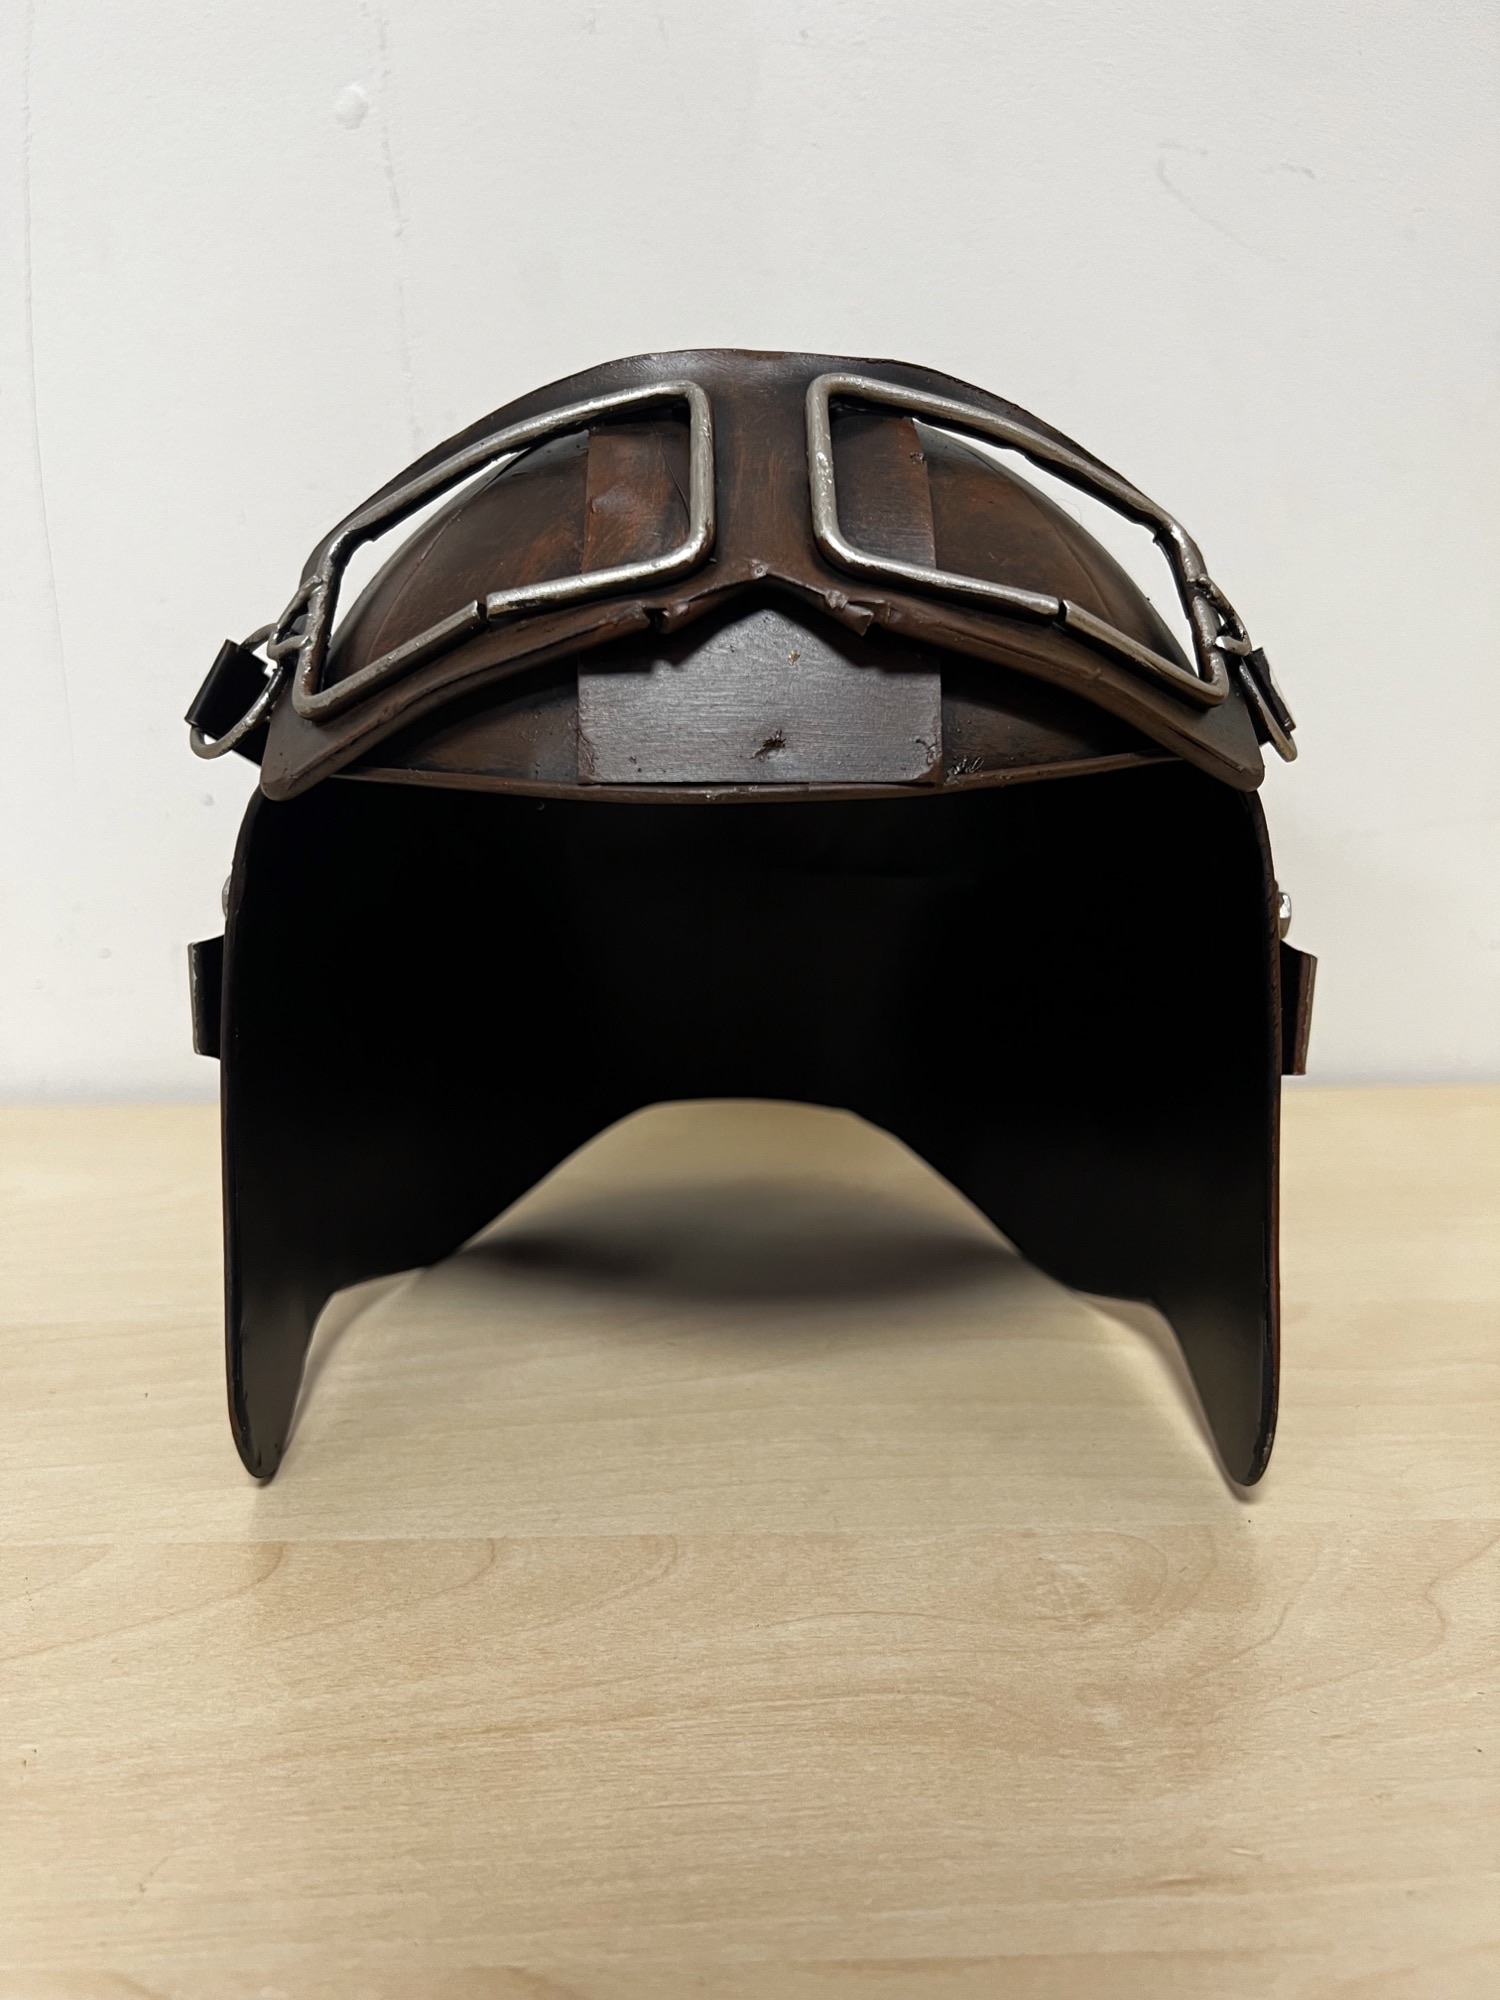 Helm pilotenhelm bril metalen miniatuur